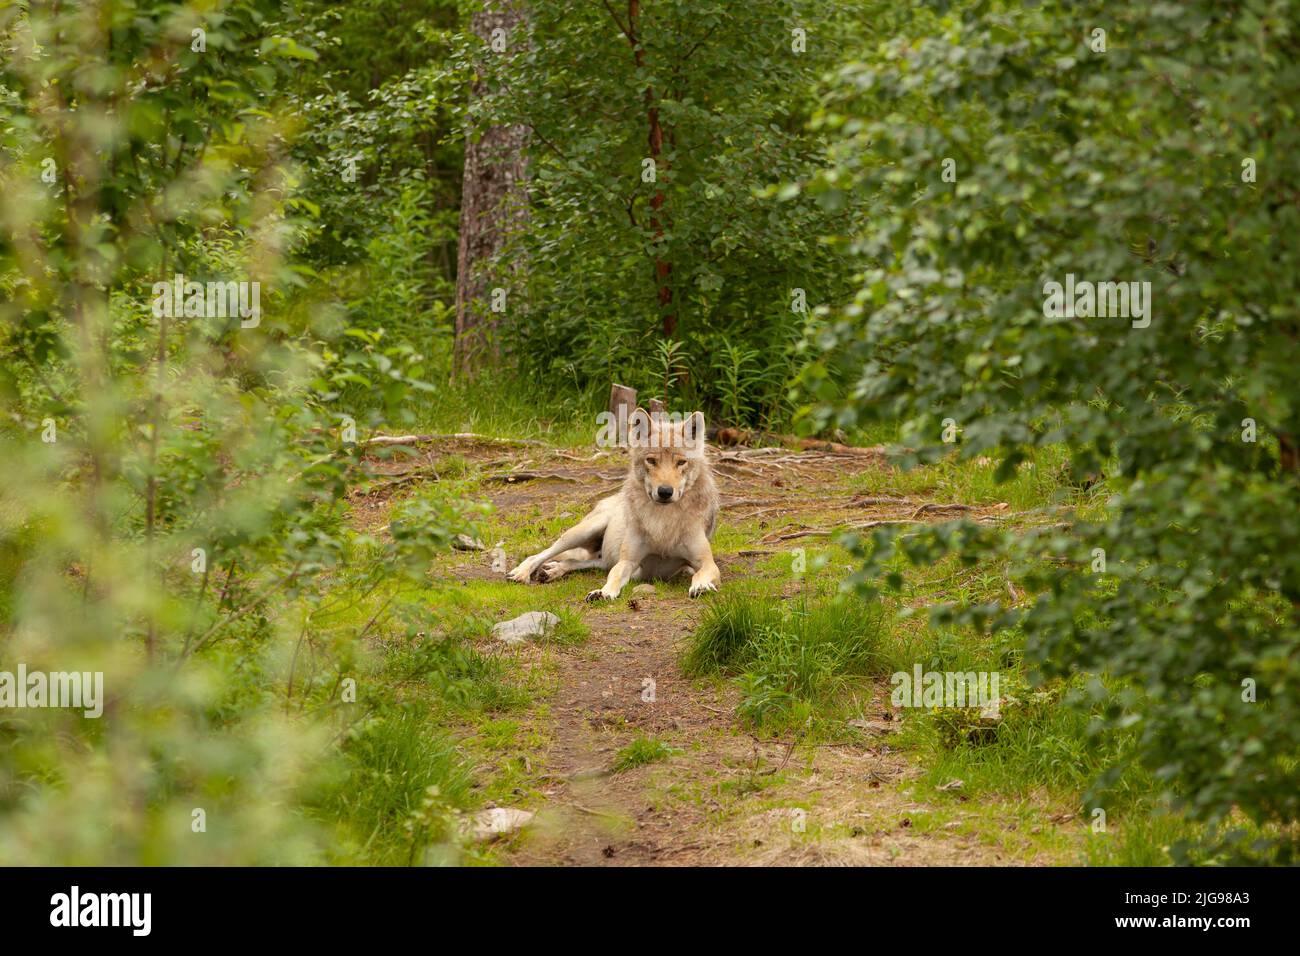 Lobo descansando en el suelo. Animal peligroso en un bosque, mirando hacia adelante y siendo tranquilo. Vegetación alrededor de la bestia y una luz nublada pero cálida. Foto de stock